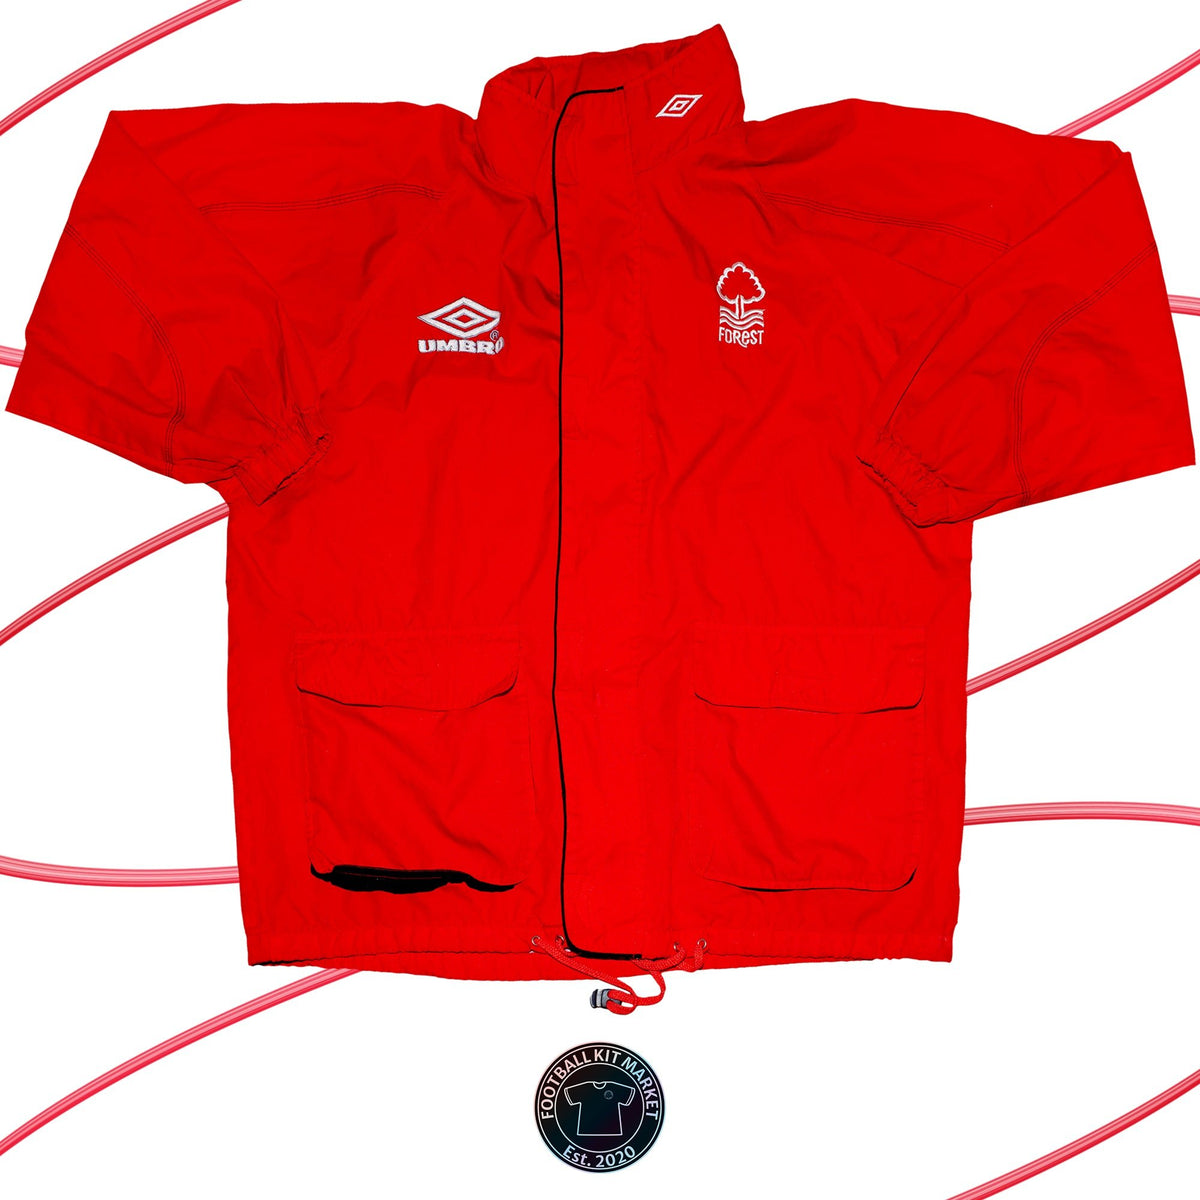 Genuine NOTTINGHAM FOREST Jacket (1998-2000) - UMBRO (S) - Product Image from Football Kit Market